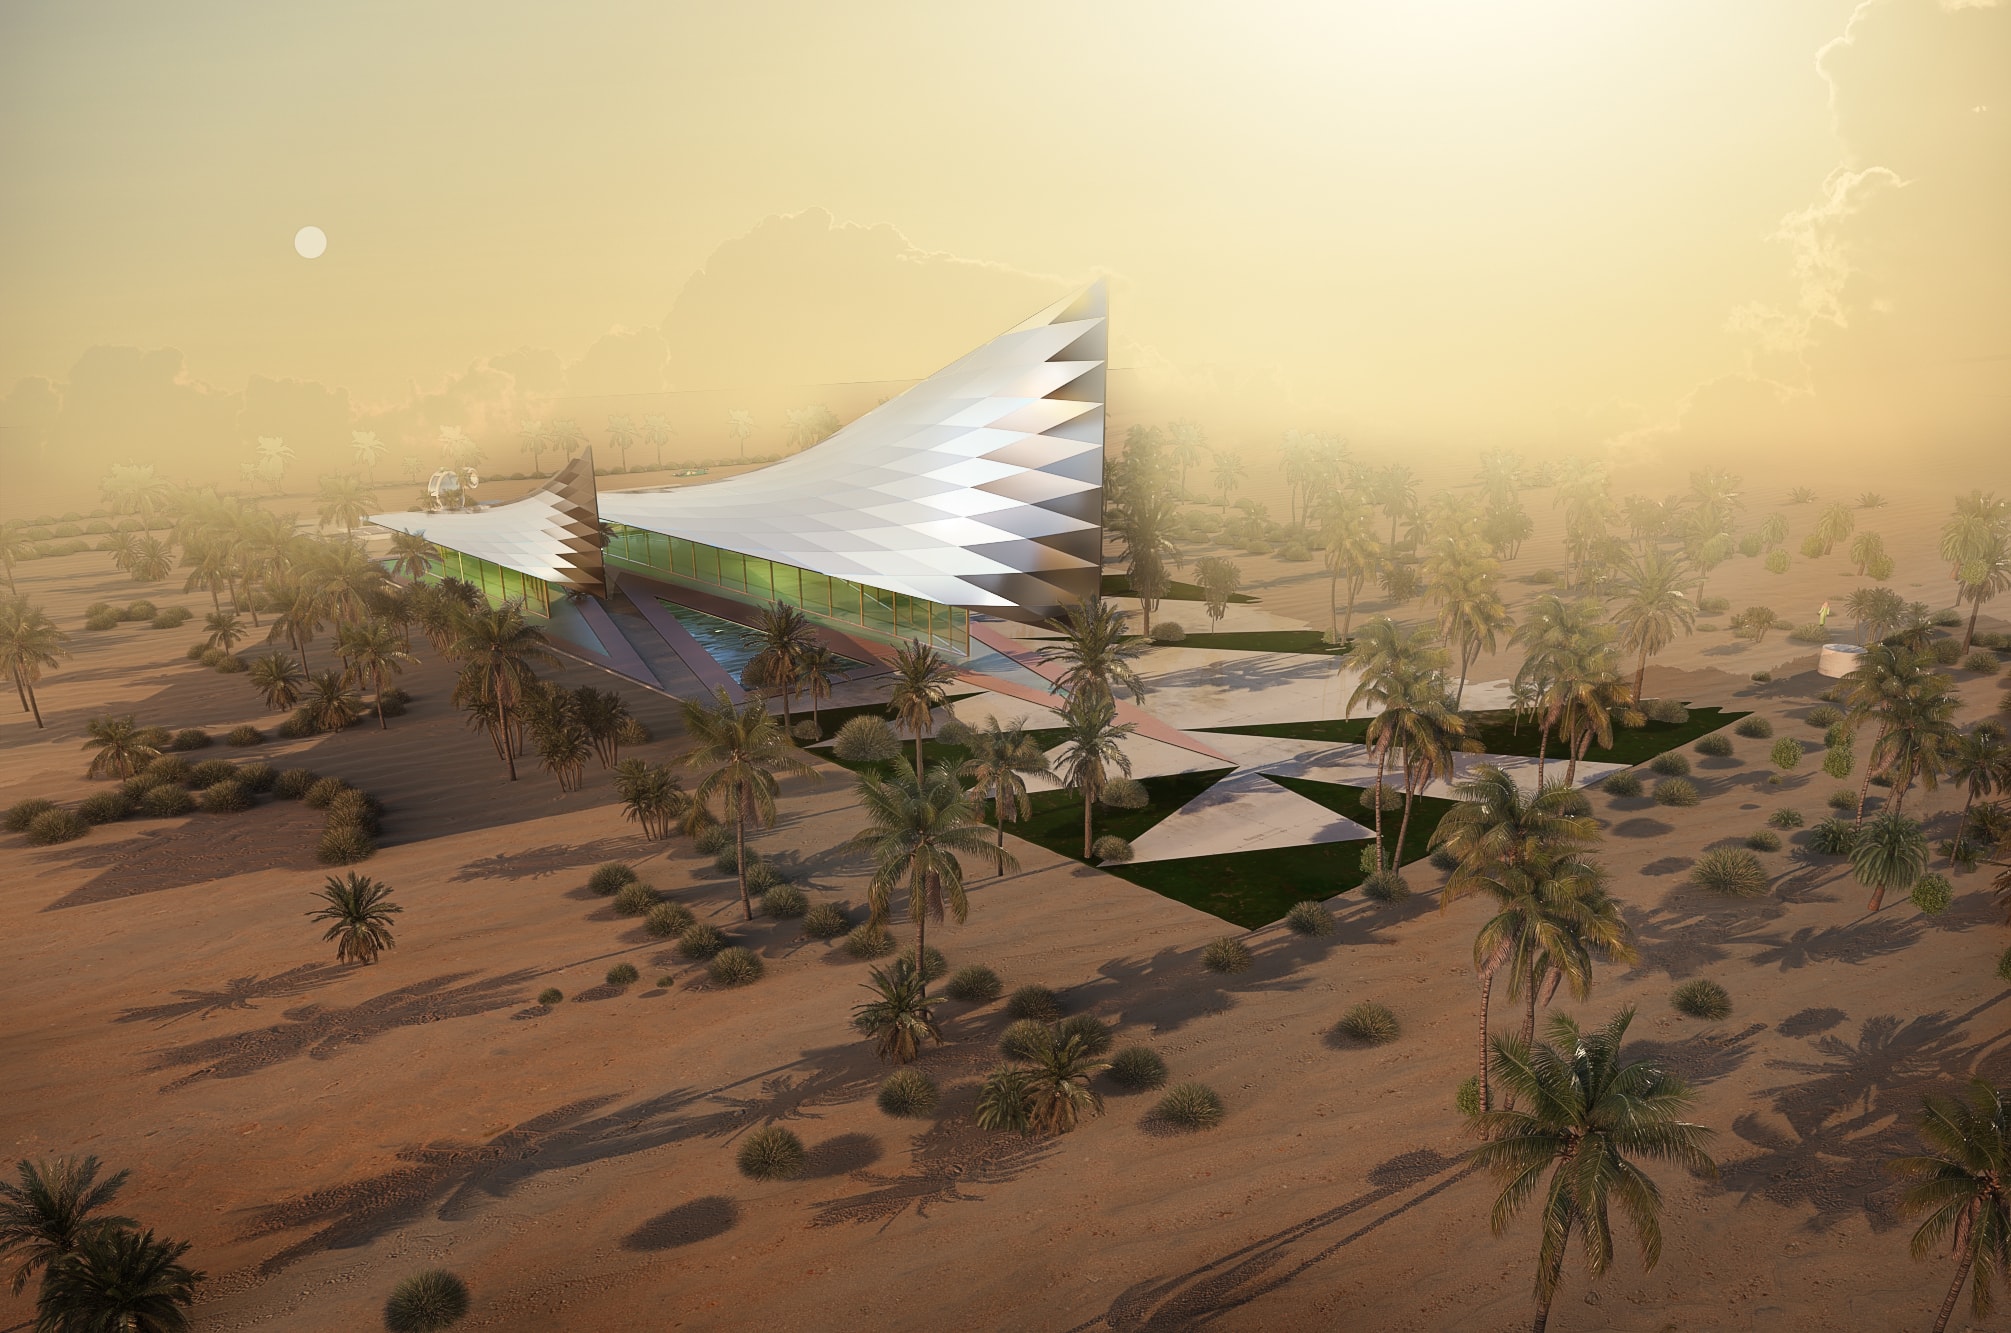 INJ Architecture is leading Saudi Arabia’s organic architecture transformation